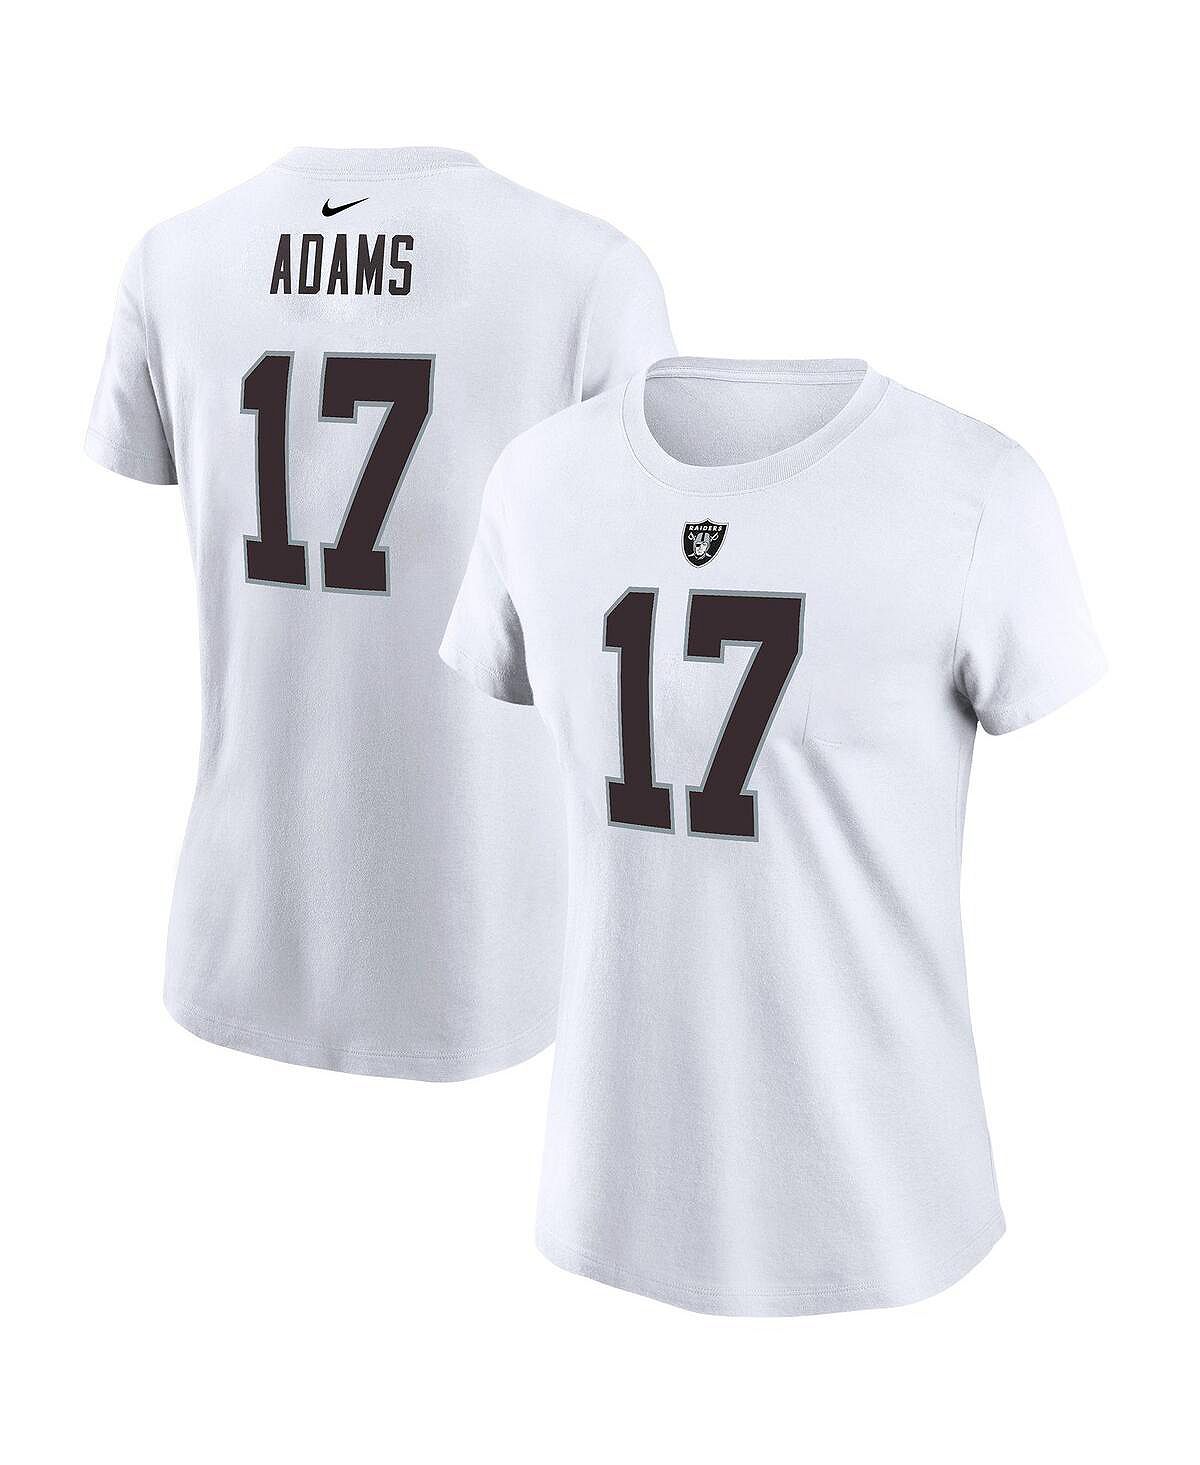 Женская футболка davante adams white las vegas raiders с именем и номером игрока Nike, белый